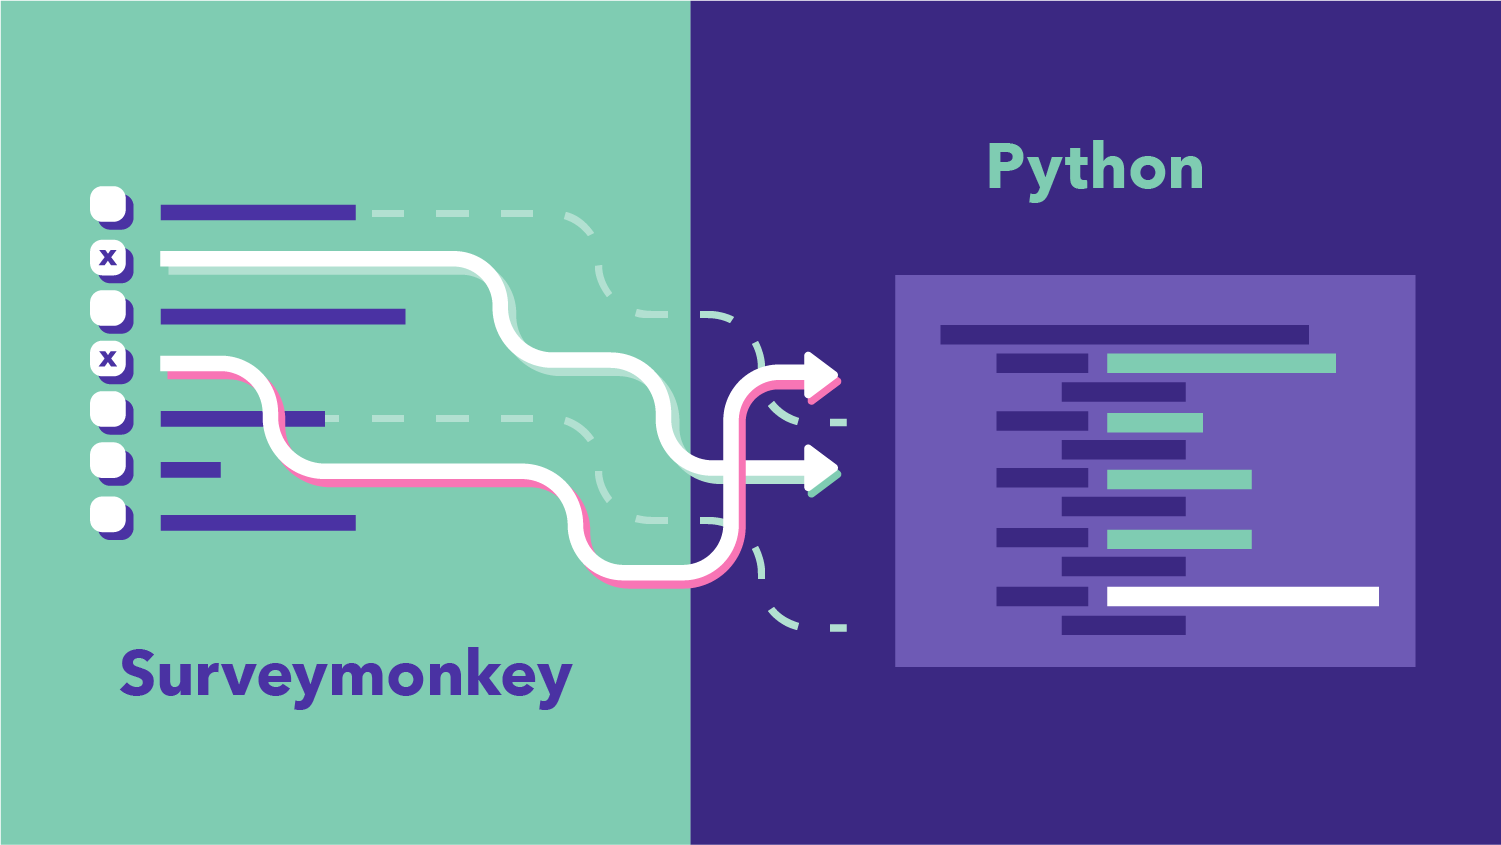 How to Analyze SurveyMonkey Data in Python